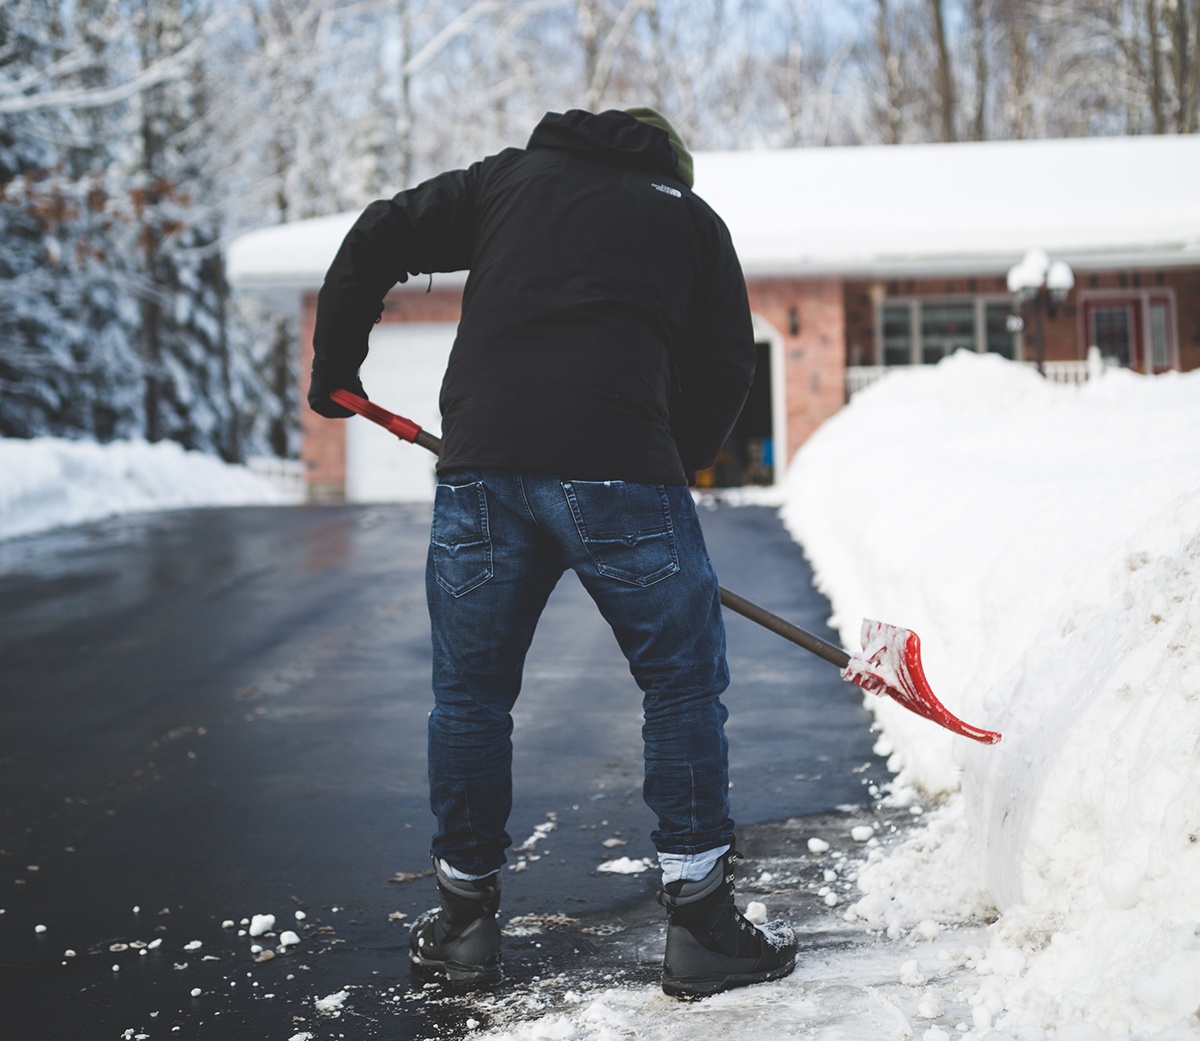 snow-shoveling-tips